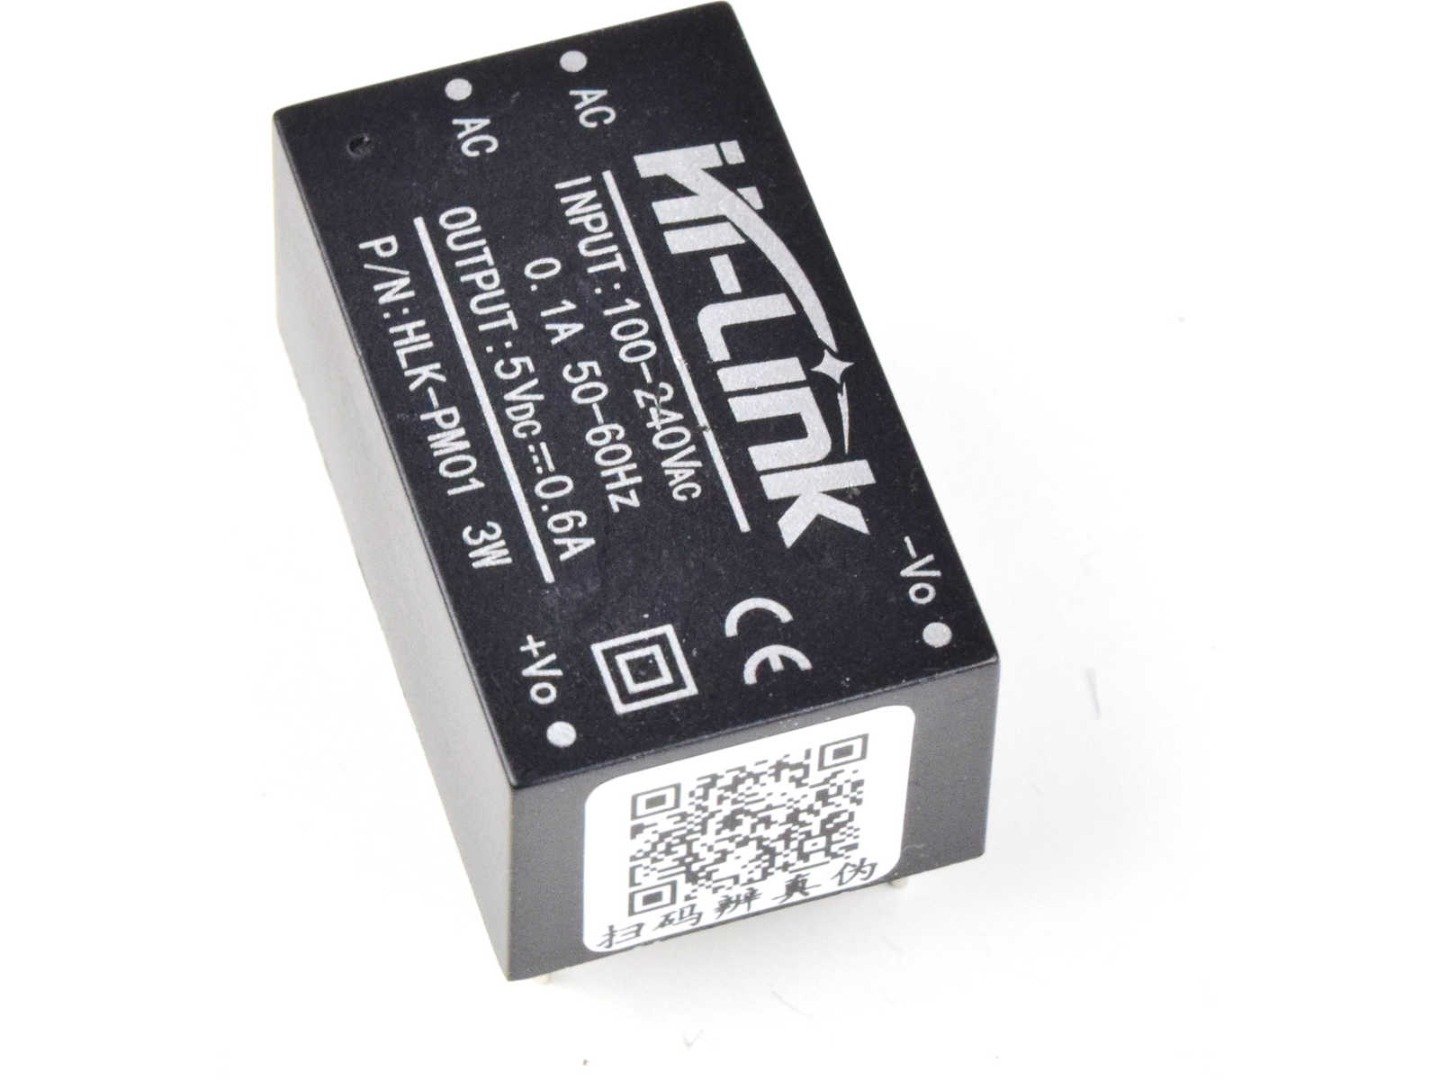 AC-DC Converter HLK-PM01 100-240V to 5V 0.6A 3W – Encapsulated Power Supply for PCB 5